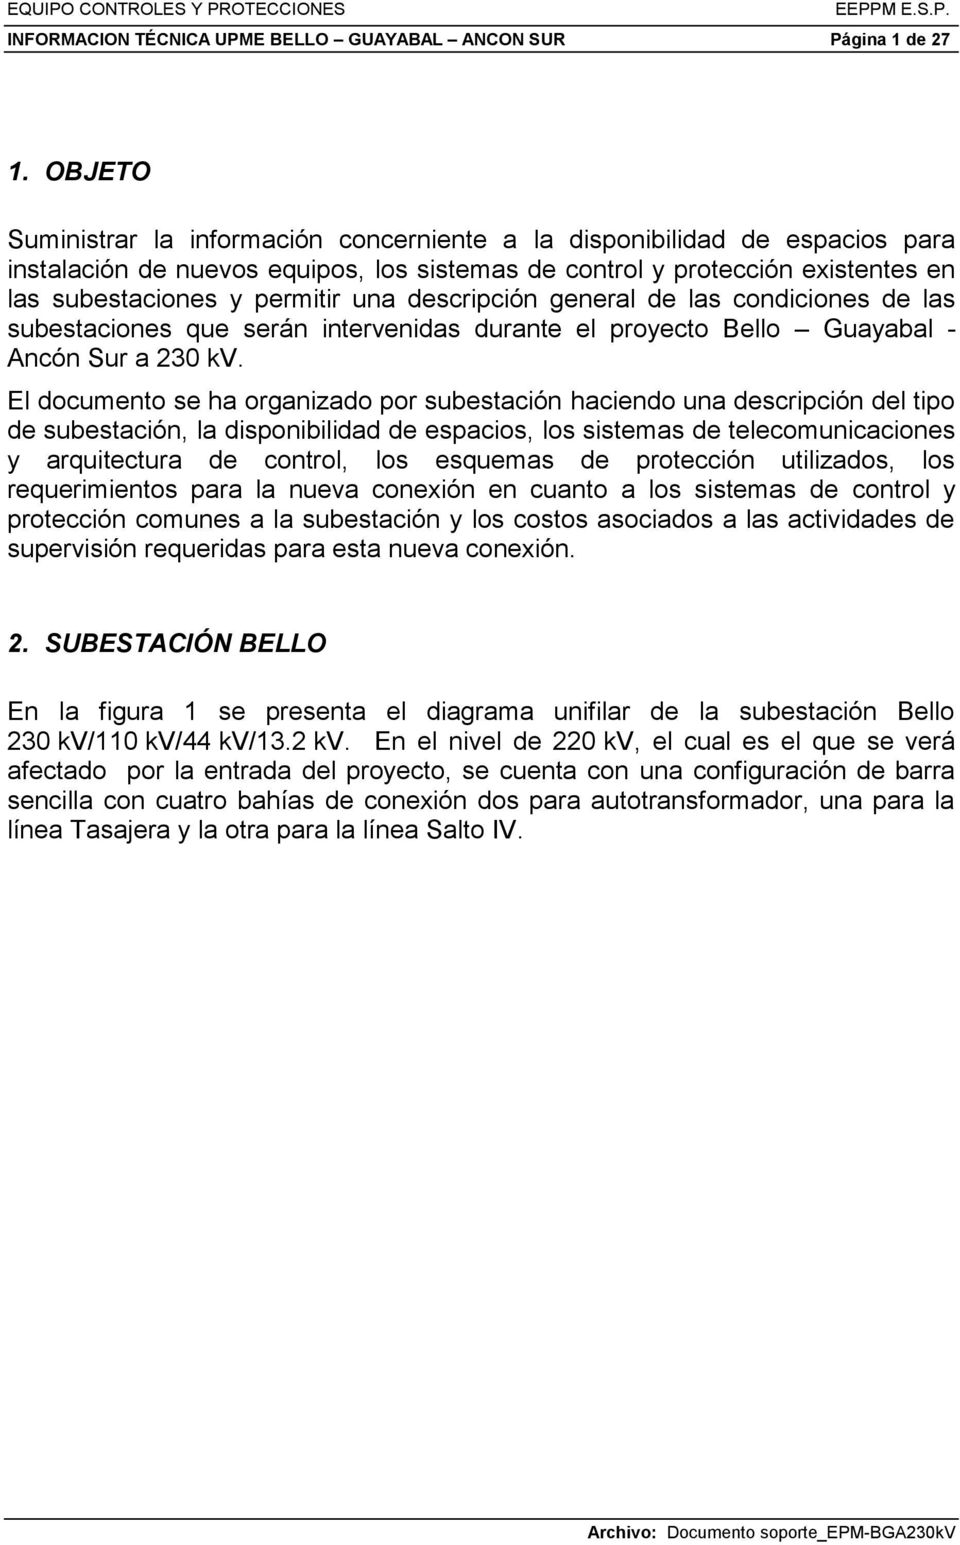 descripción general de las condiciones de las subestaciones que serán intervenidas durante el proyecto Bello Guayabal - Ancón Sur a 230 kv.